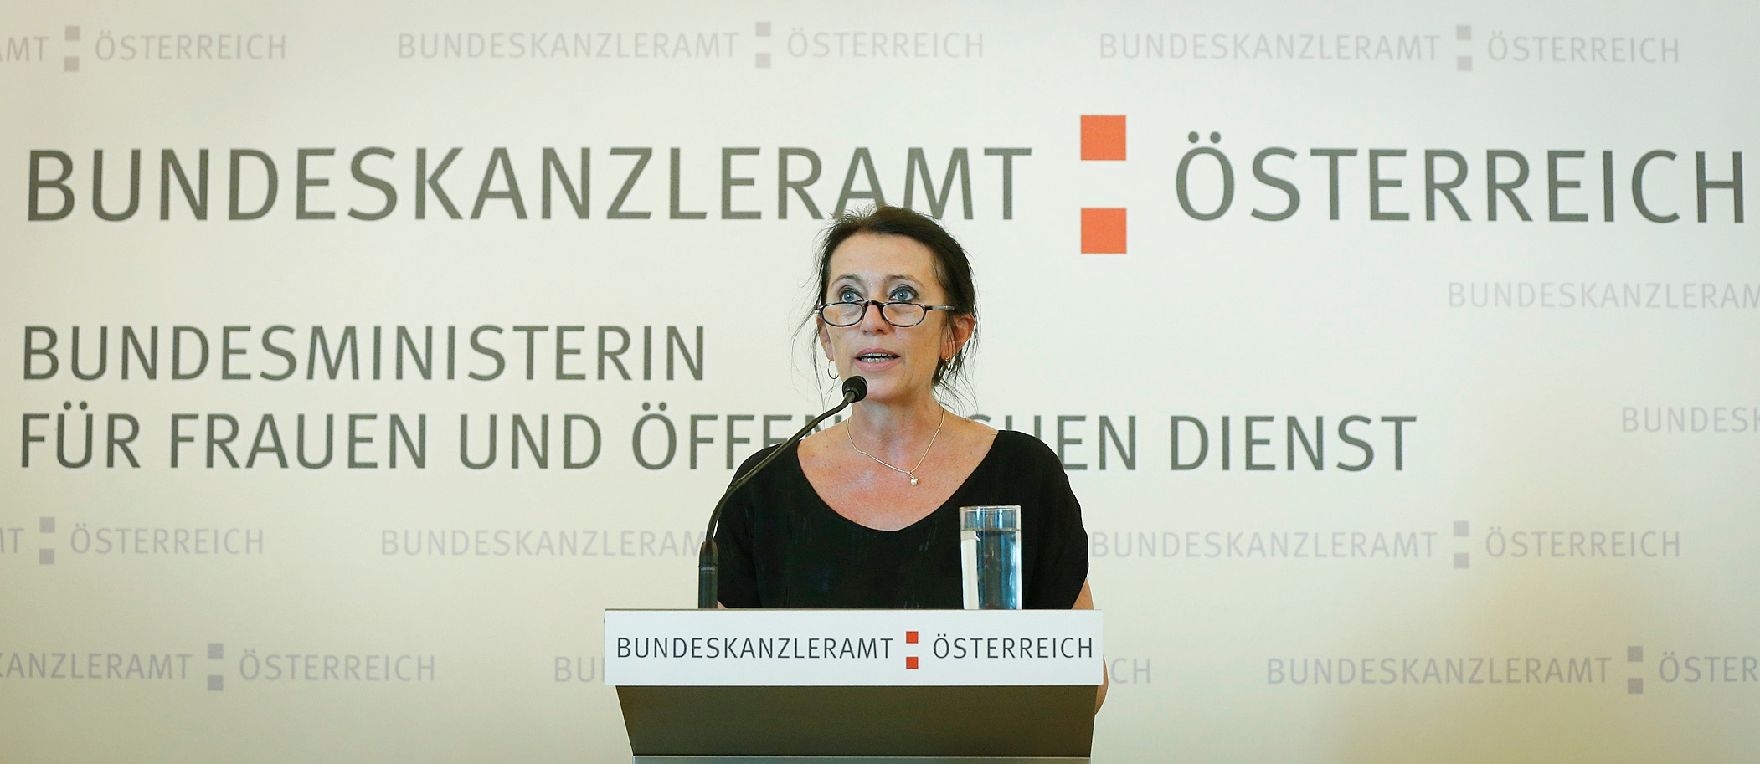 Am 19. Juni 2013 lud Frauenministerin Gabriele Heinisch-Hosek zur Verleihung des Johanna-Dohnal Preises 2013 ins Bundeskanzleramt.